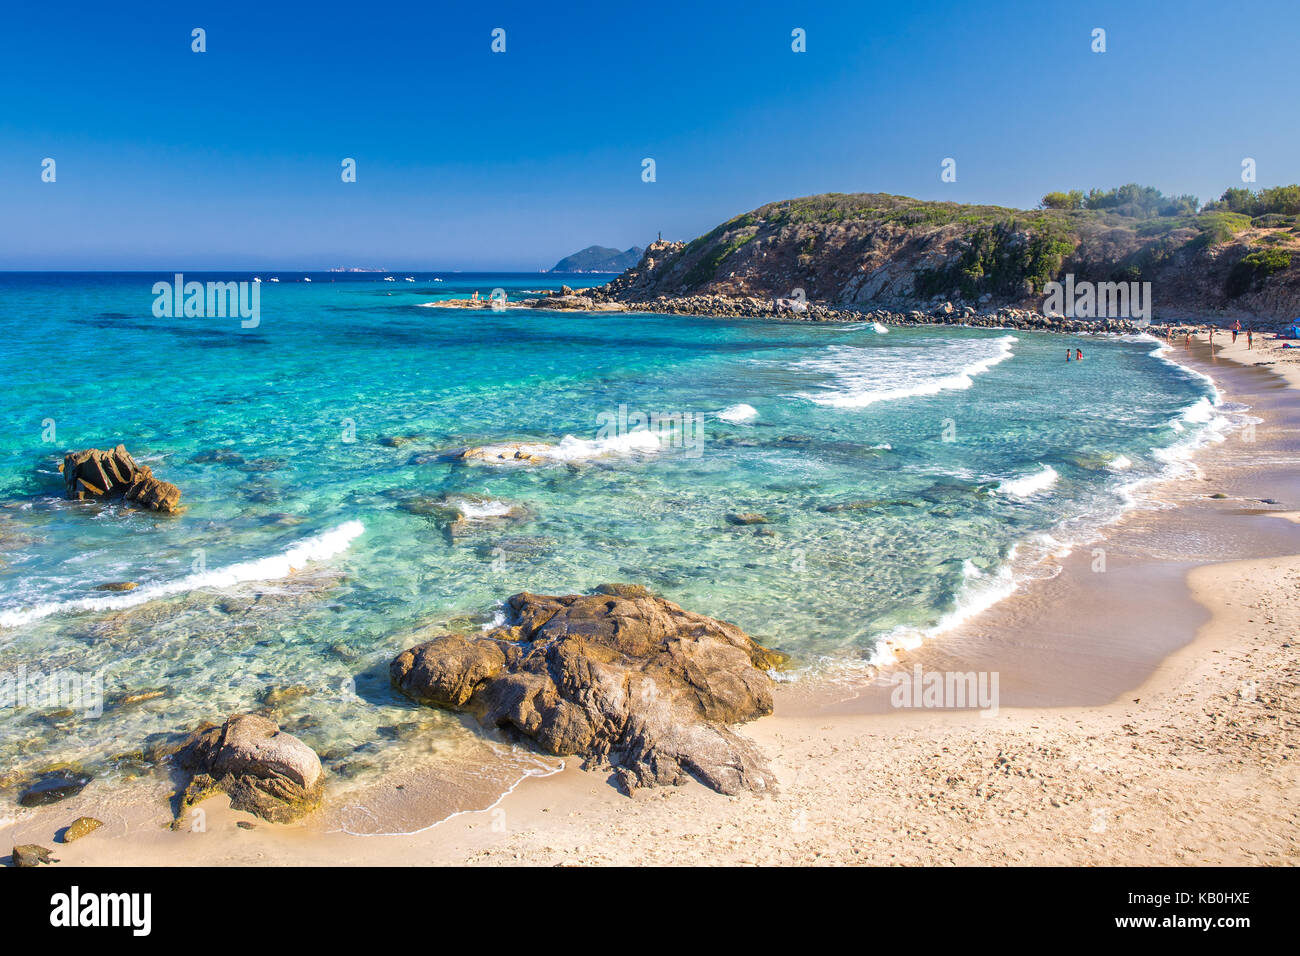 Spaggia di Santa Giusta strand mit azurblauem Wasser, Costa Rei, Sardinien, Italien. Sardinien ist die zweitgrößte Insel im Mittelmeer. Stockfoto